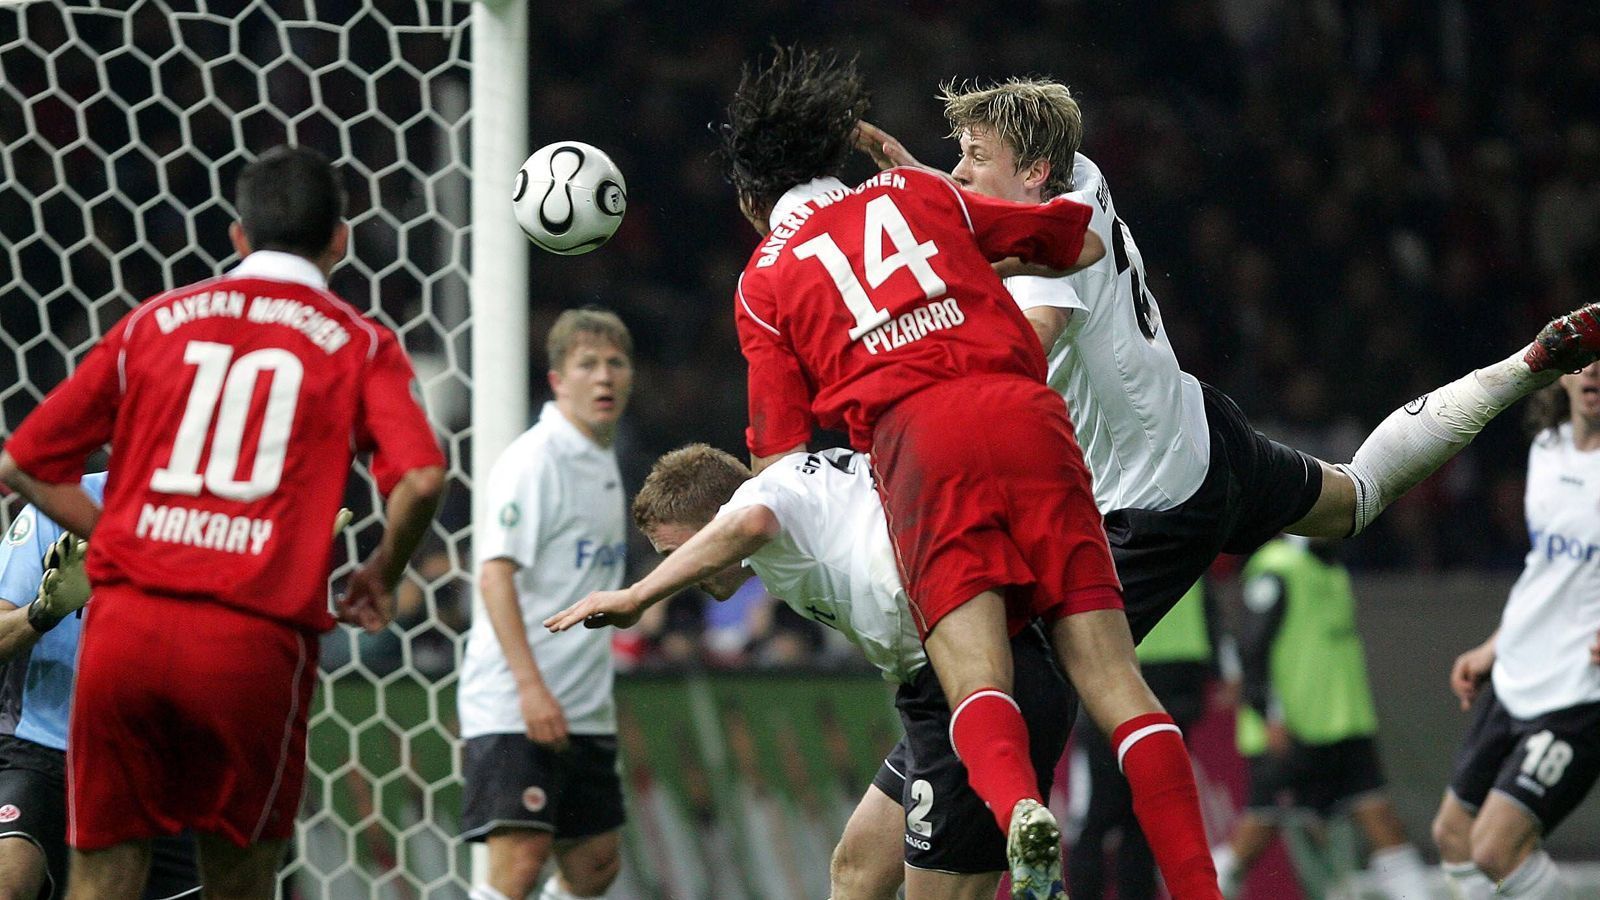 
                <strong>FCB-SGE-2006-DFB-Pokal</strong><br>
                DFB-Pokal, 2005/06: Bayern München - Eintracht Frankfurt 1:0 - Bayern holt den PottDiesmal saß Felix Magath auf der Bayern-Bank. Seit zwei Jahren coachte er die Münchener national von Erfolg zu Erfolg. Im Finale des DFB-Pokals war der Titelverteidiger gegen die Eintracht, die die Saison auf Platz 14 abgeschlossen hatte, haushoher Favorit. Doch Friedhelm Funkel hatte seine Mannschaft gut auf die Bayern eingestellt und die Partie bis zum Abpfiff spannend gehalten. Das Tor des Tages gelang Claudio Pizarro (Bild) nach 59 Minuten. Die Bayern hatte ihren Doublegewinn des Vorjahres wiederholt. Das war vorher noch keinem Team gelungen.
              